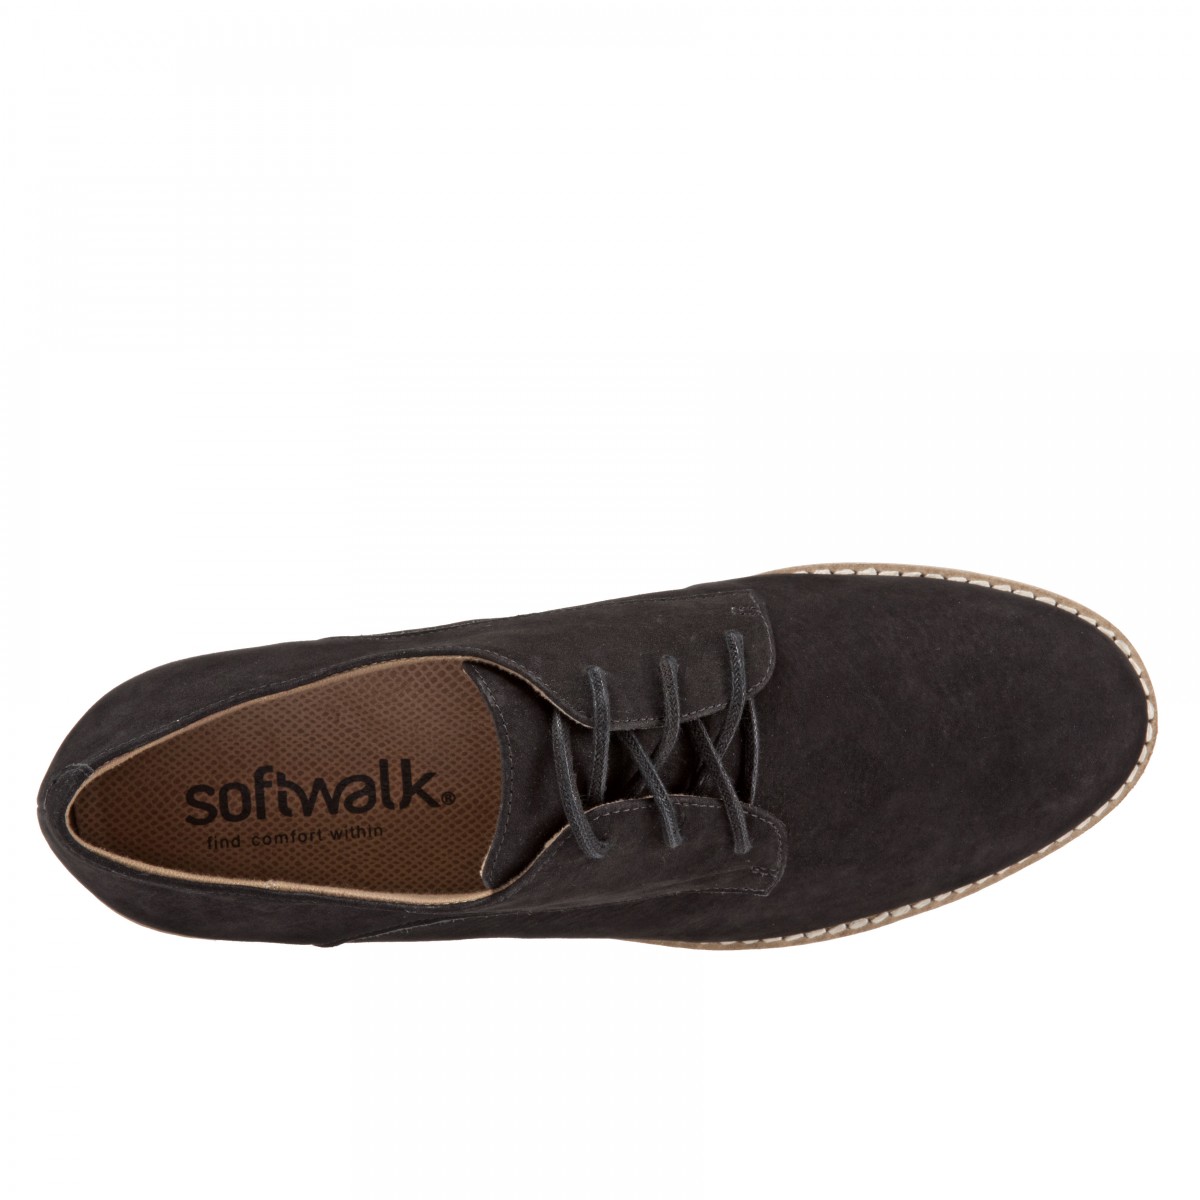 Softwalk Willis Women's Casual Comfort Shoe - Free Shipping